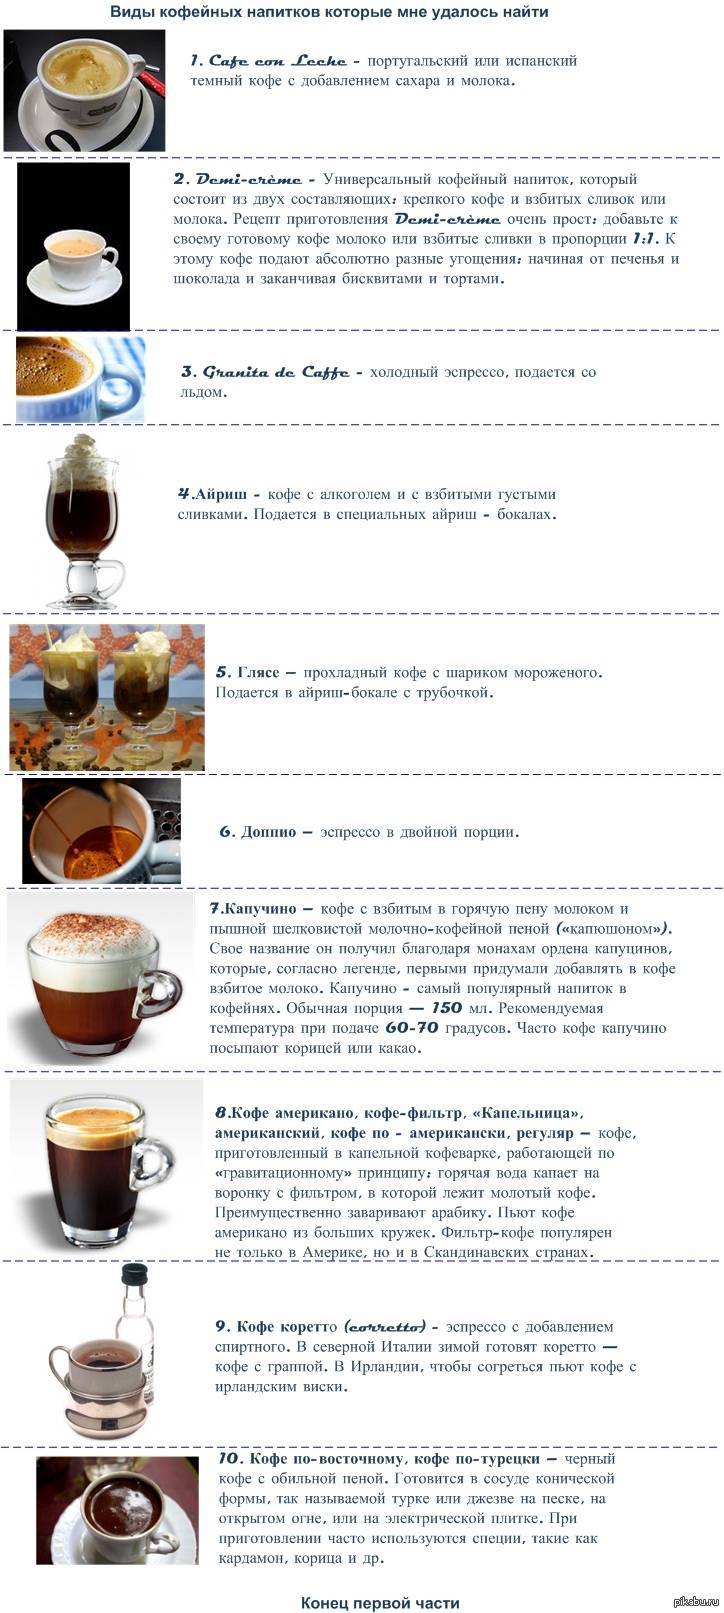 Московская кофейня на паяхъ — история развития